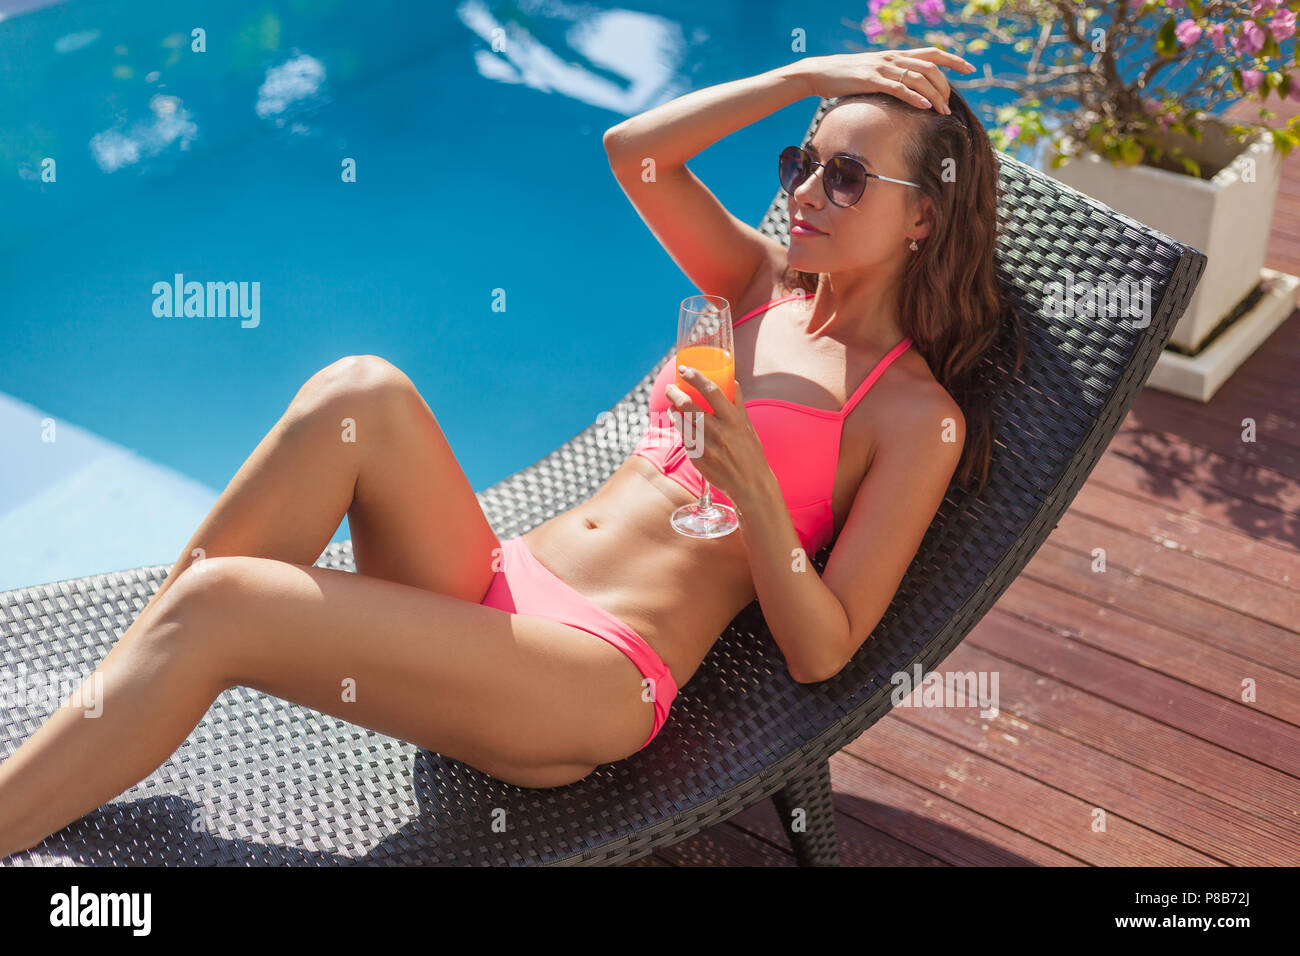 Junge Frau im Bikini in der Sonne liegend Lounge mit Cocktail am Pool  Stockfotografie - Alamy